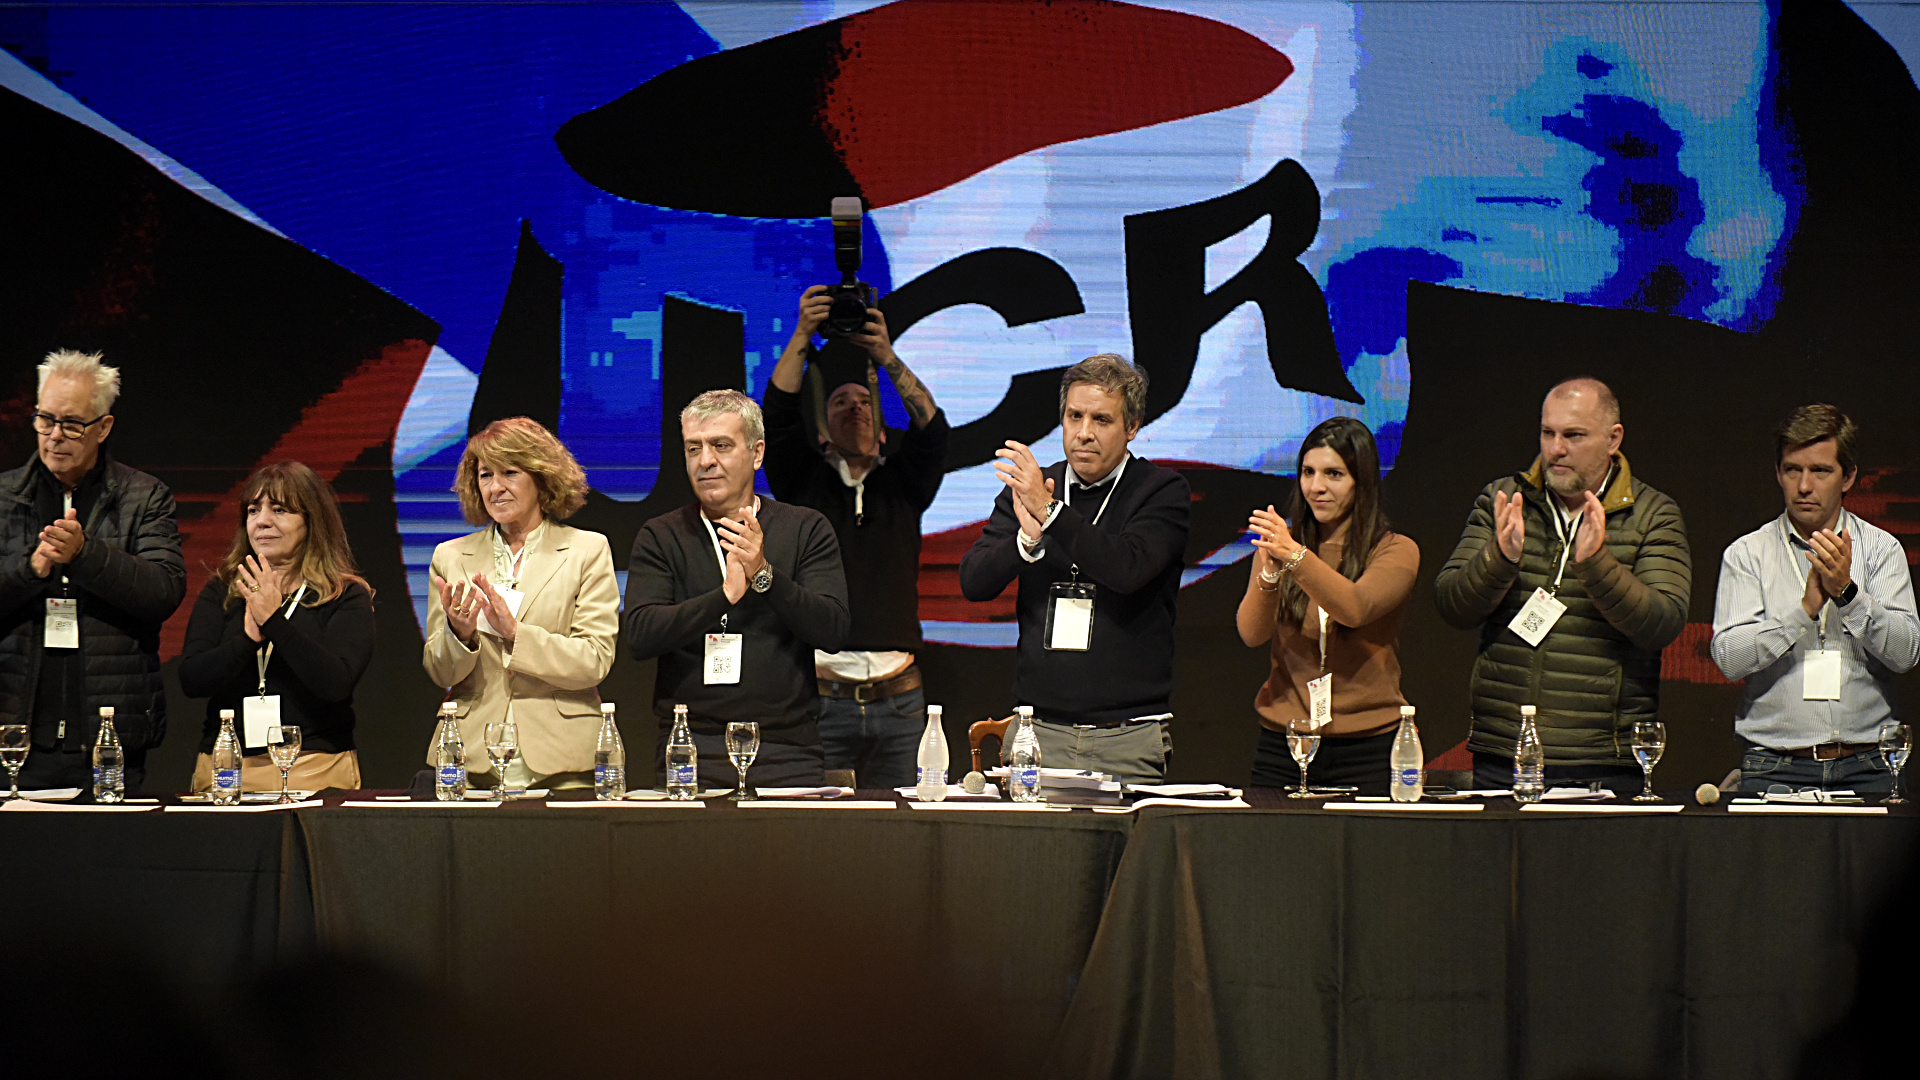 La UCR firmó un documento de unidad, pero hubo reproches y desconfianza por las futuras alianzas electorales